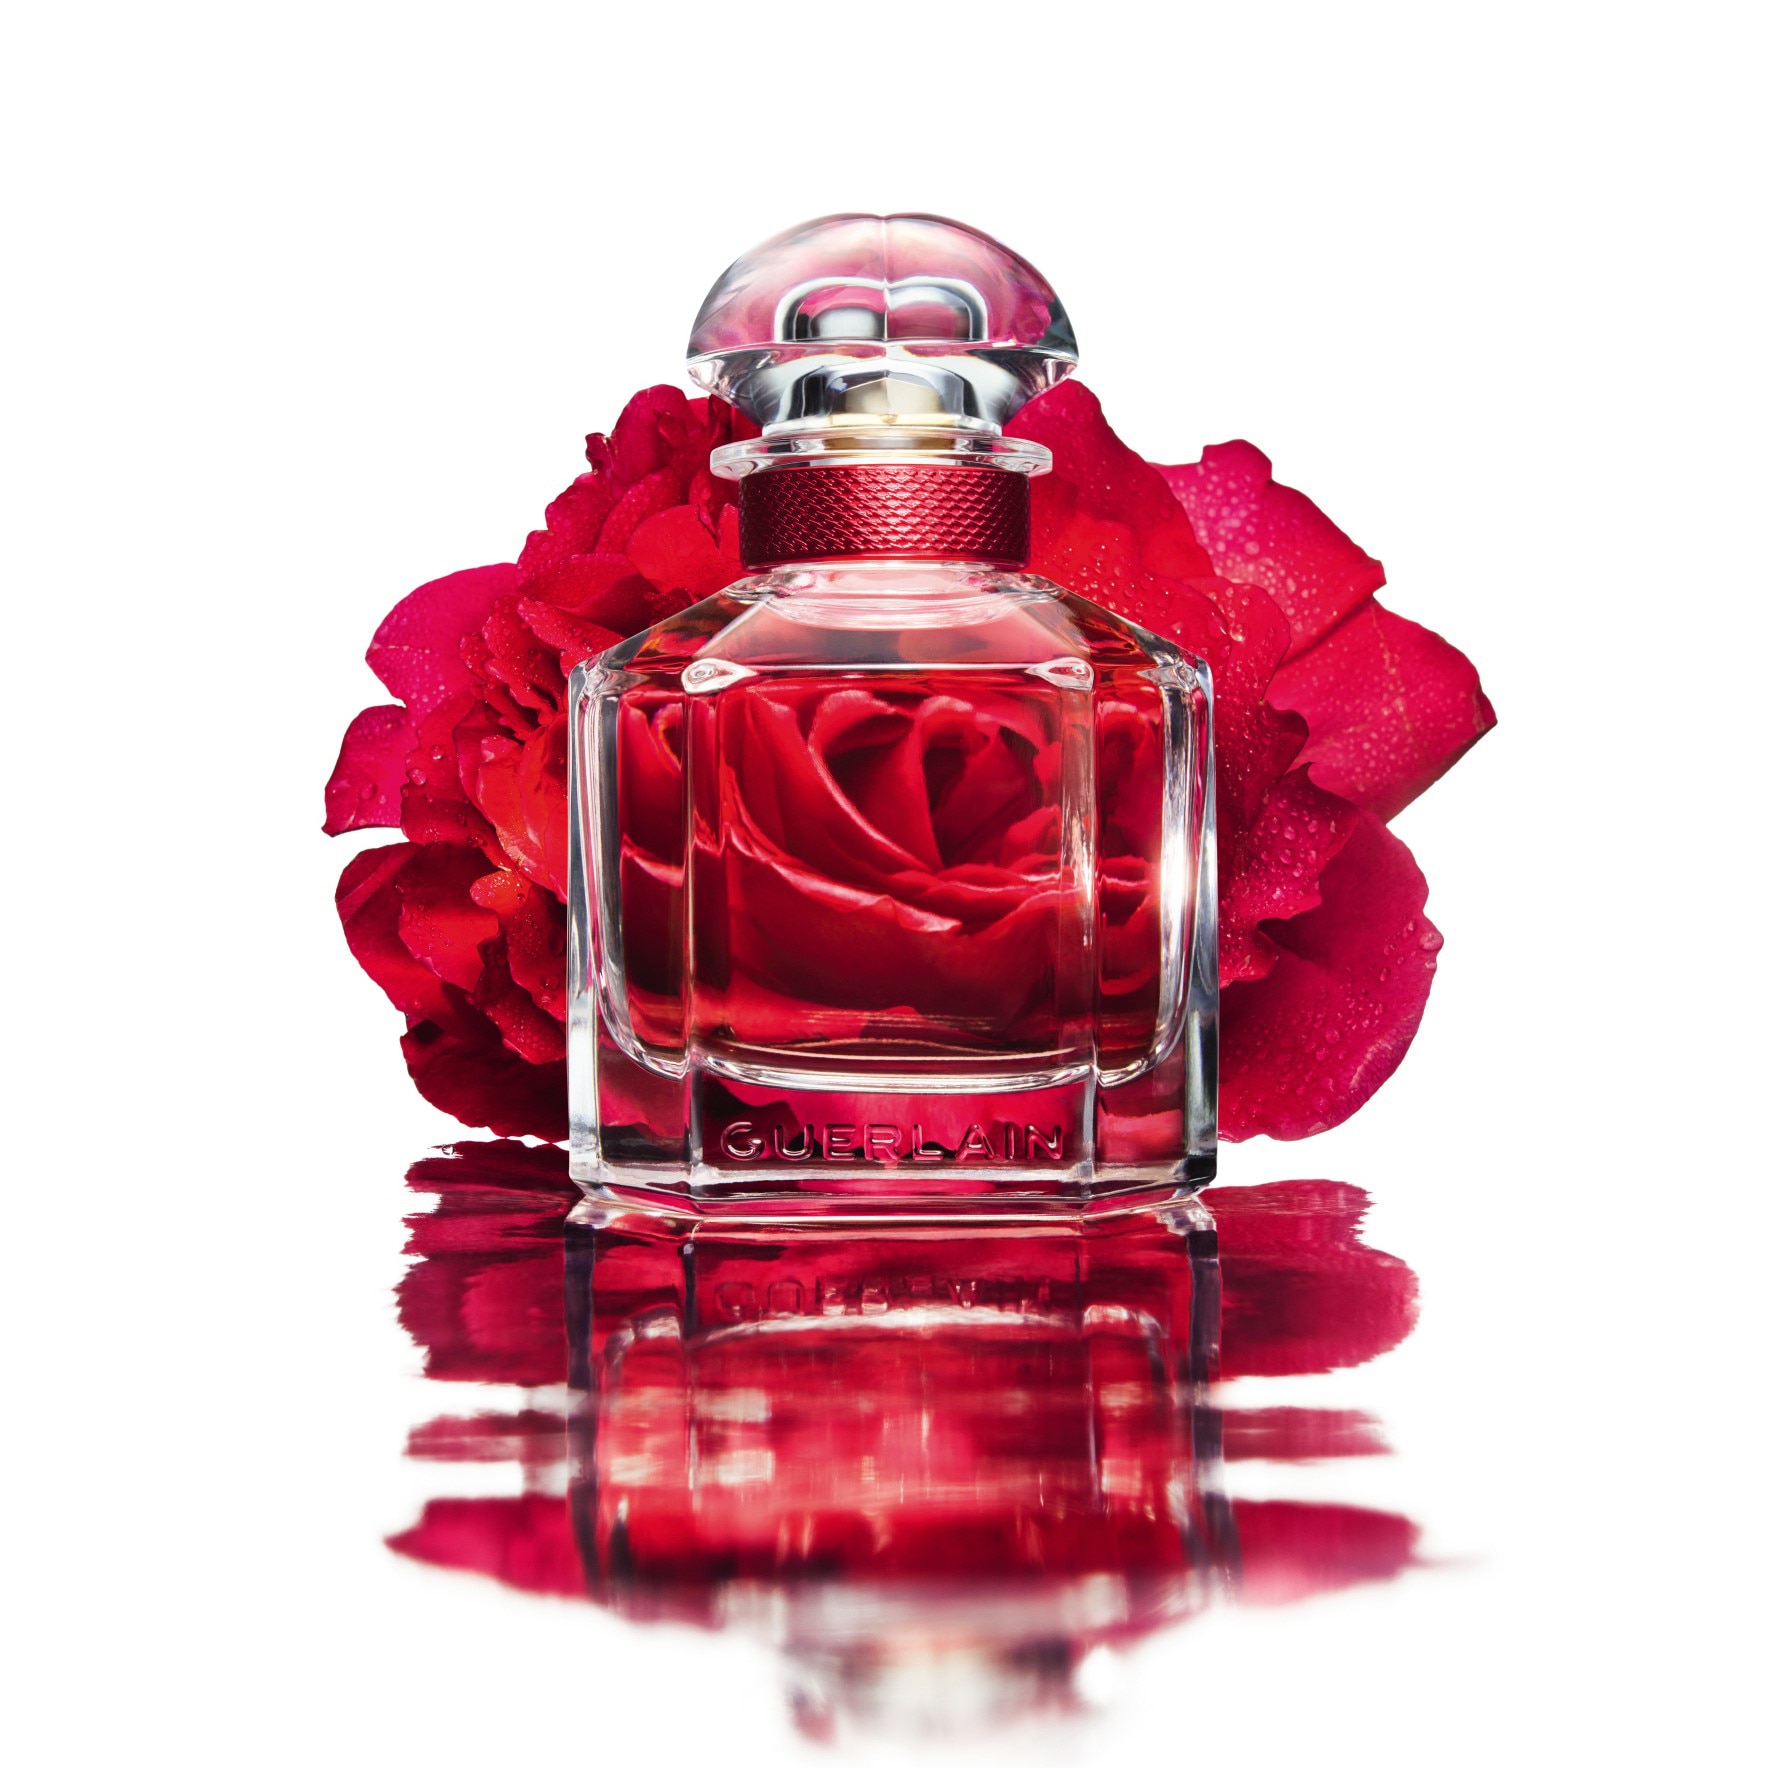 bloom of rose parfum